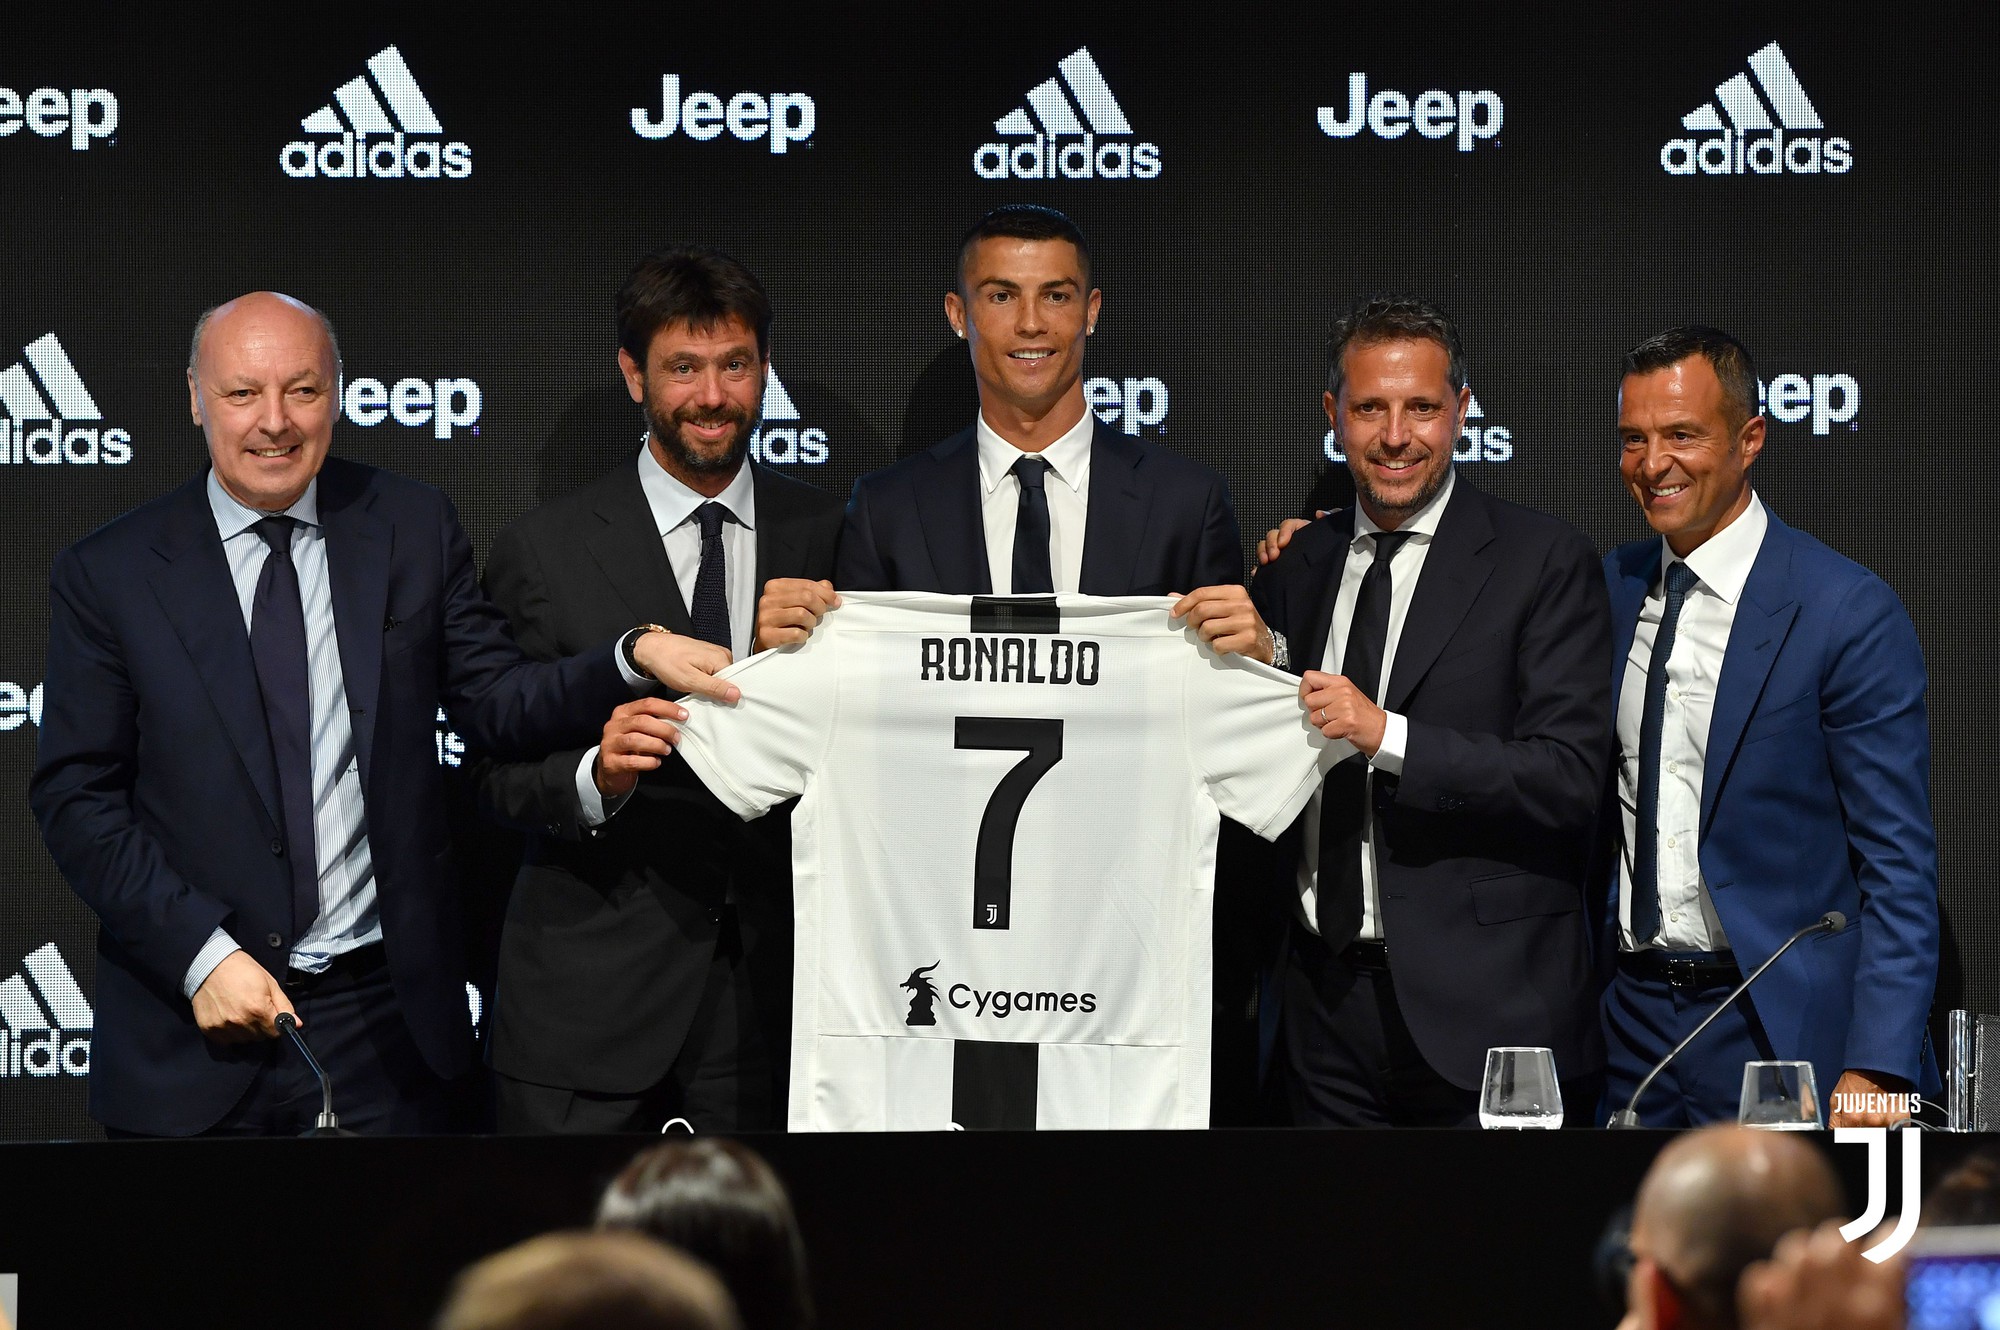 Sức hút Ronaldo giúp Juventus đè bẹp Barca, Real và cả Man Utd trên Youtube - Ảnh 4.